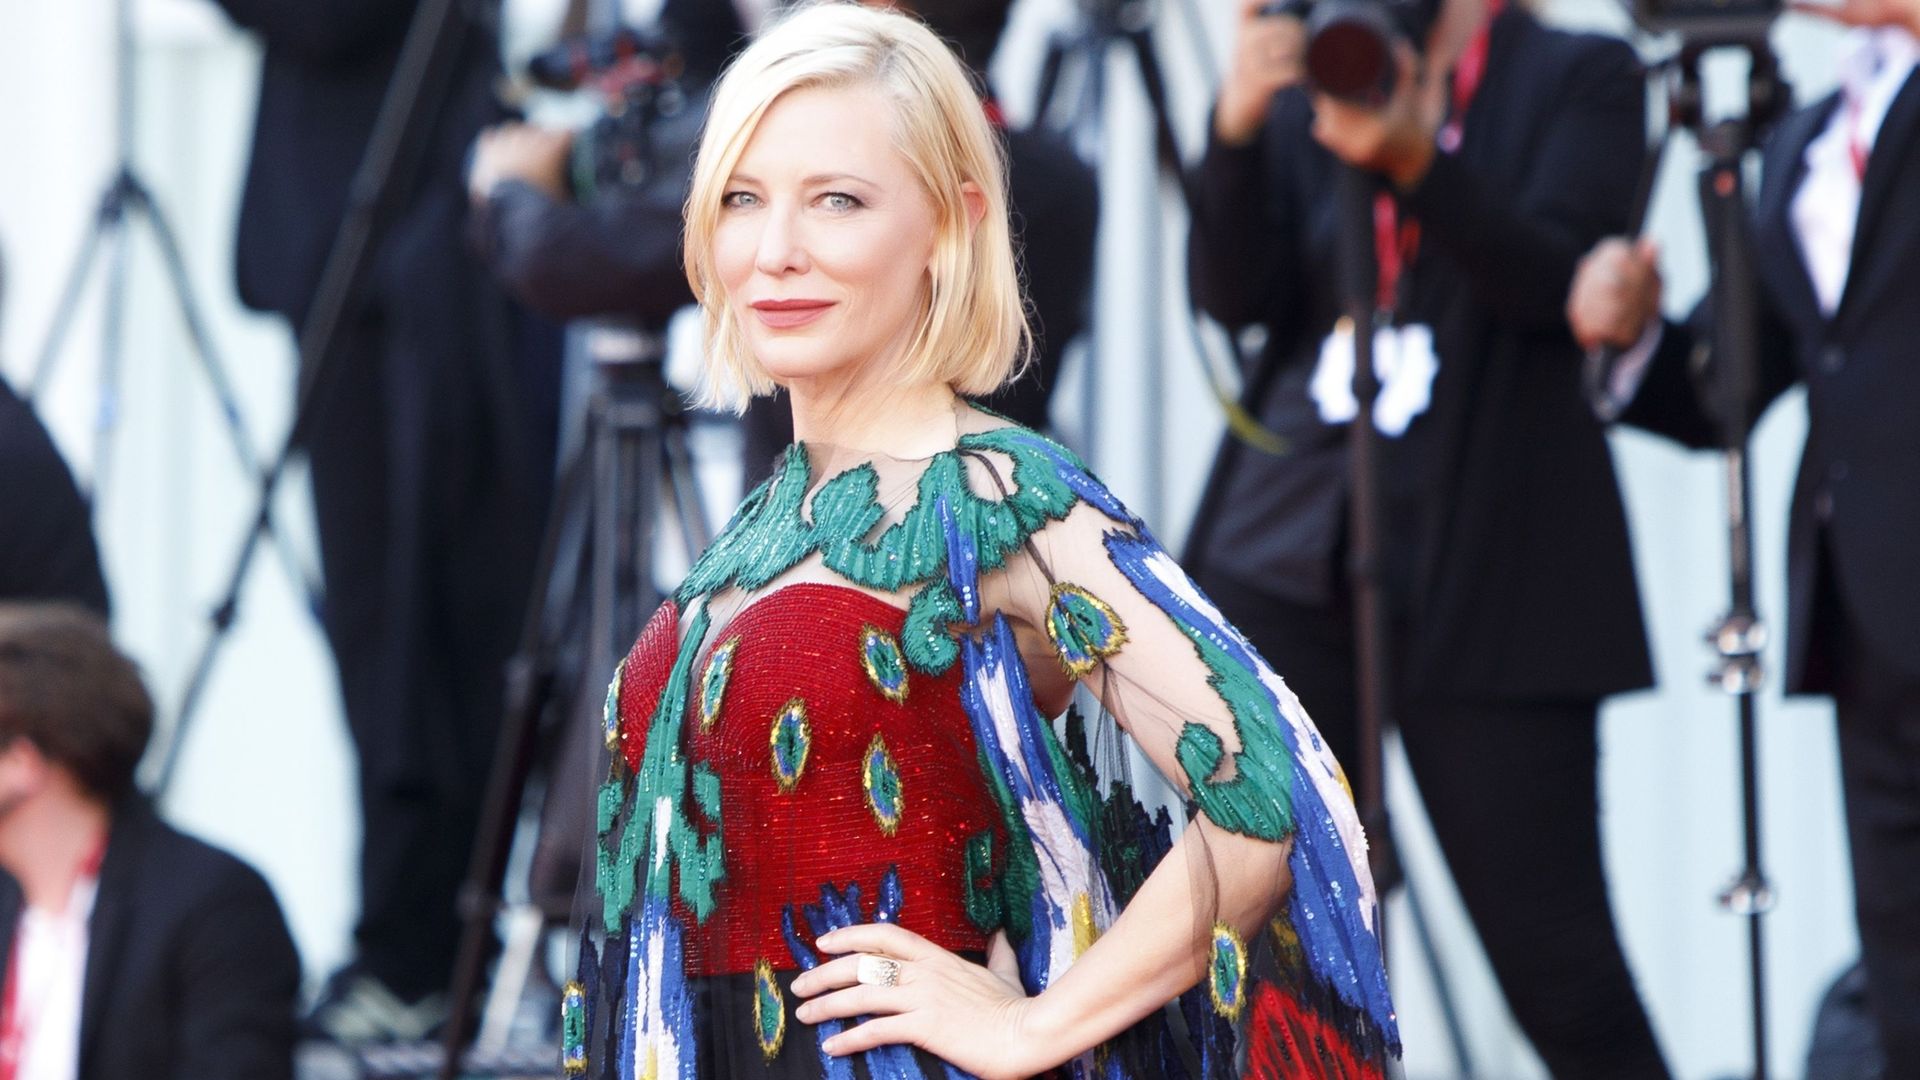 Cate Blanchett foule le tapis rouge avant la cérémonie de clôture de la 77e Mostra de Venise, le 12 septembre 2020 à Venise, en Italie.